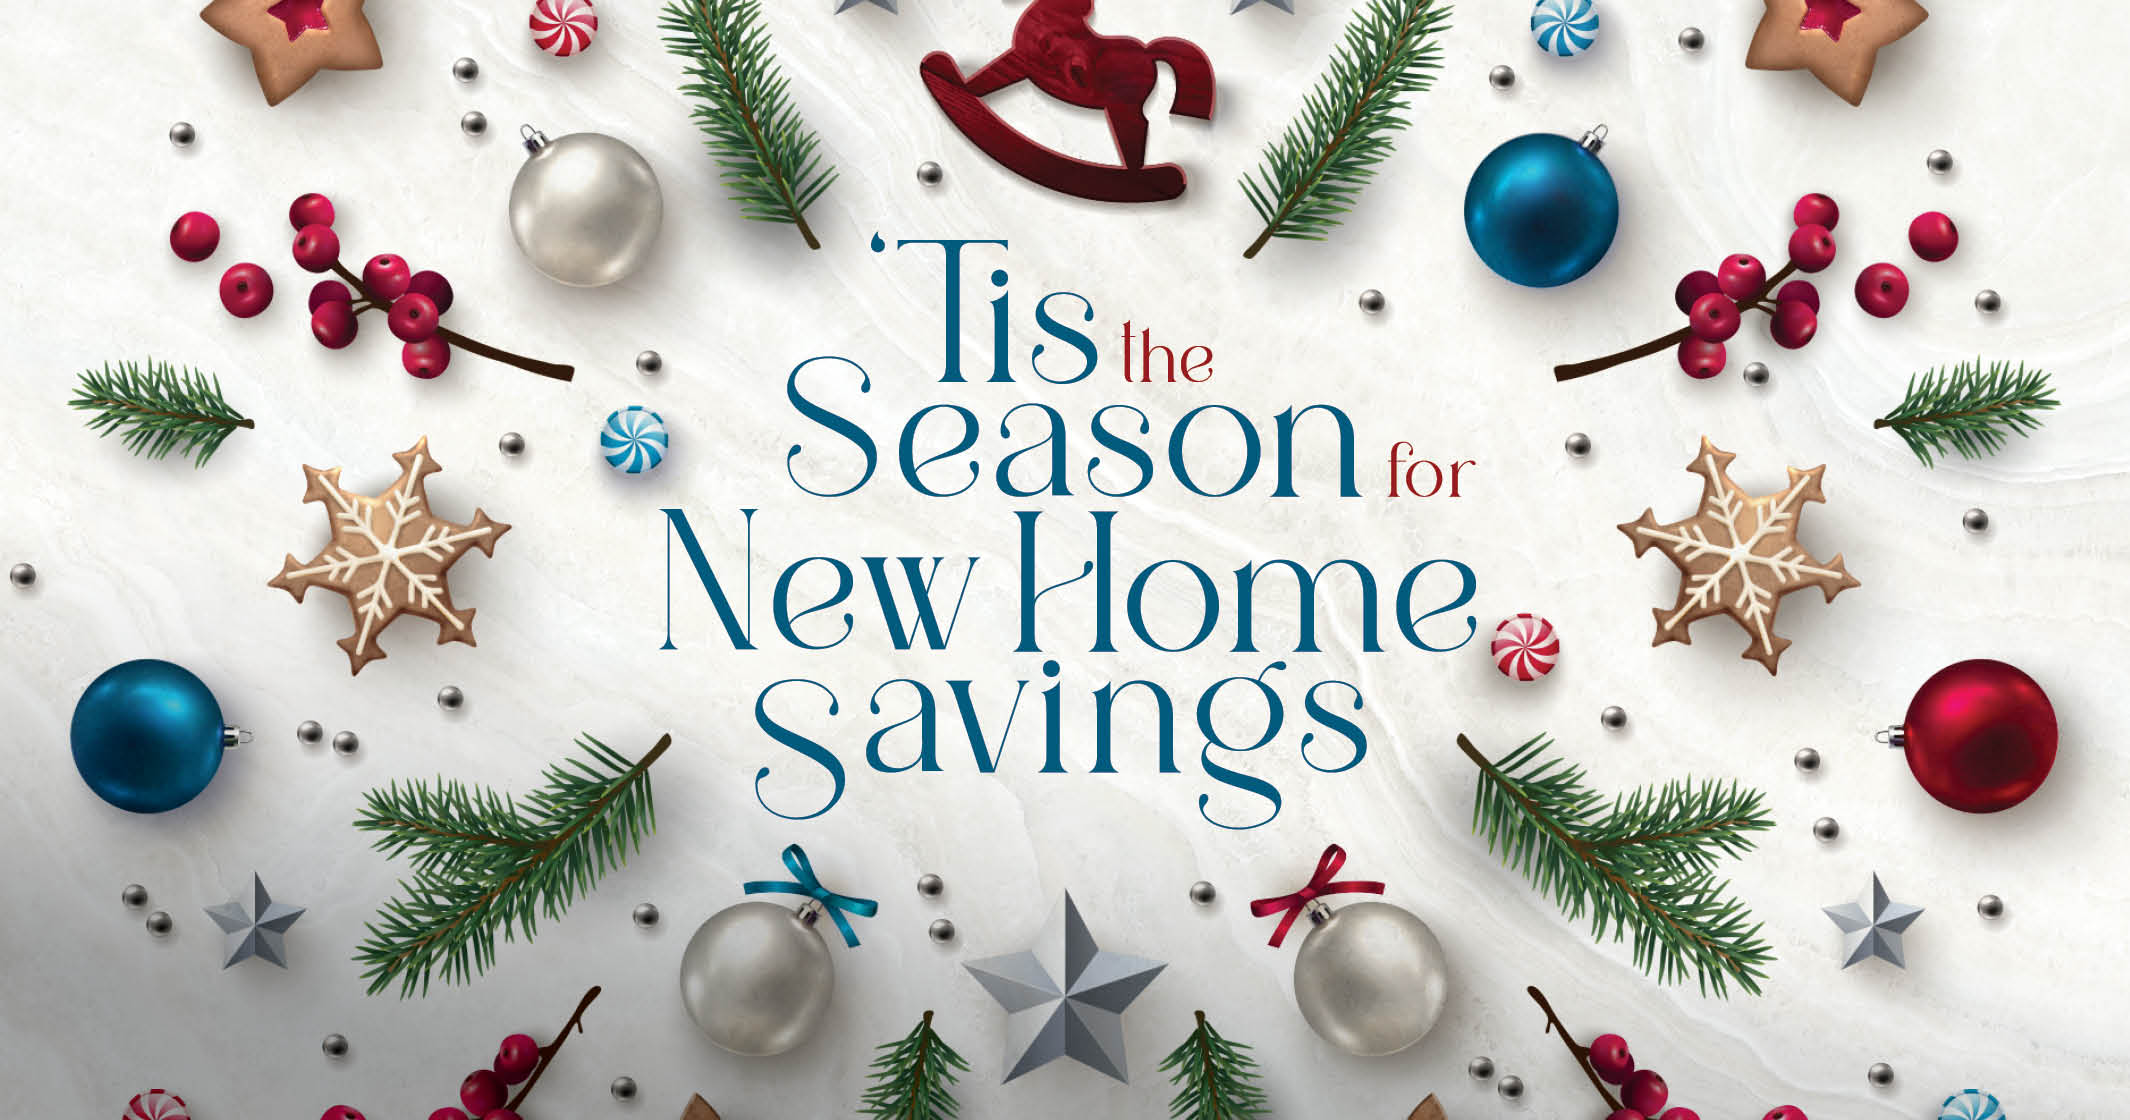 Tis the season for new home savings